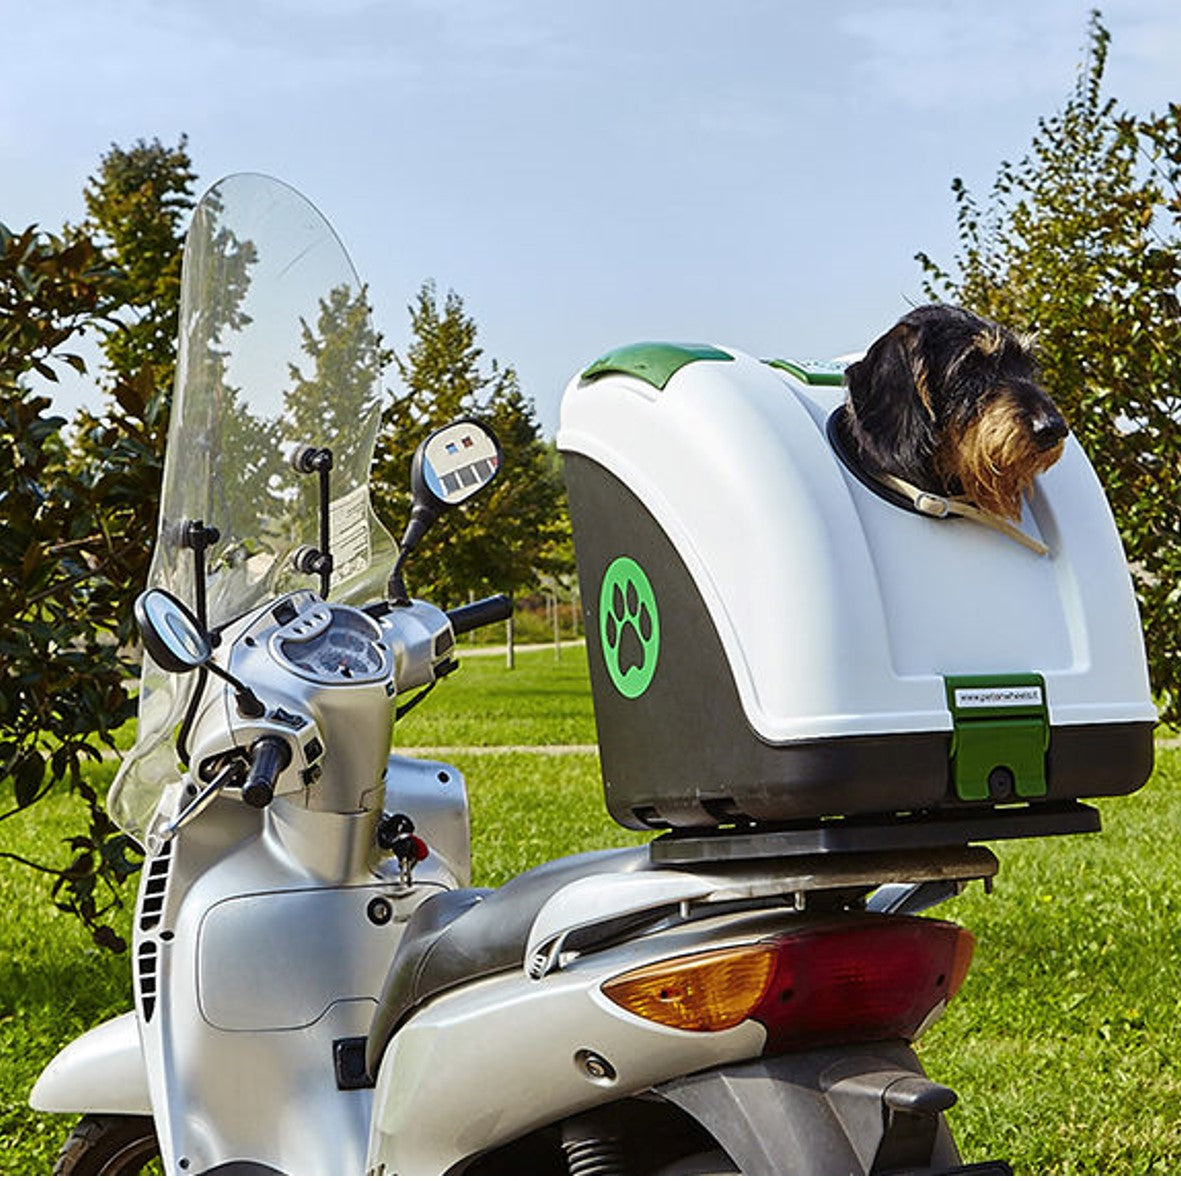 Bauletto per trasporto animali in moto, bici e auto - POW Pet On Wheel